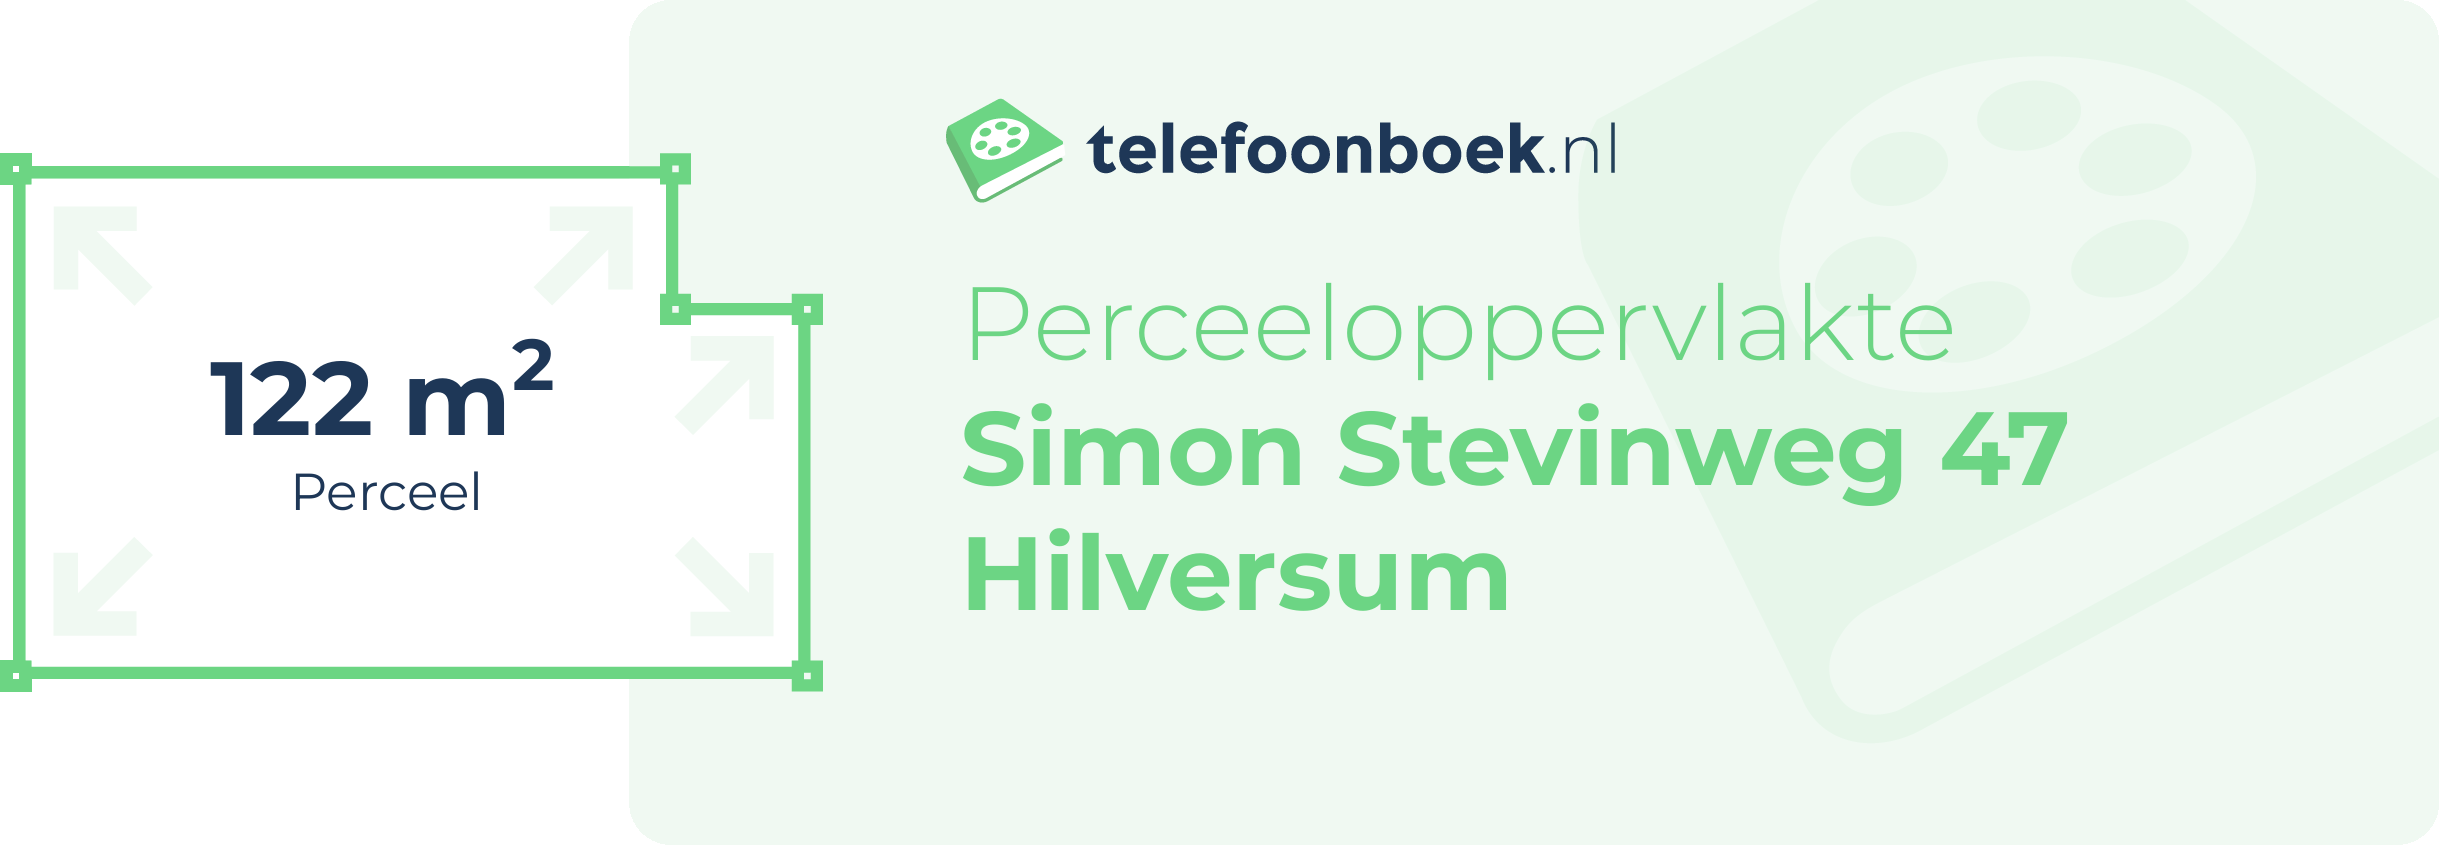 Perceeloppervlakte Simon Stevinweg 47 Hilversum